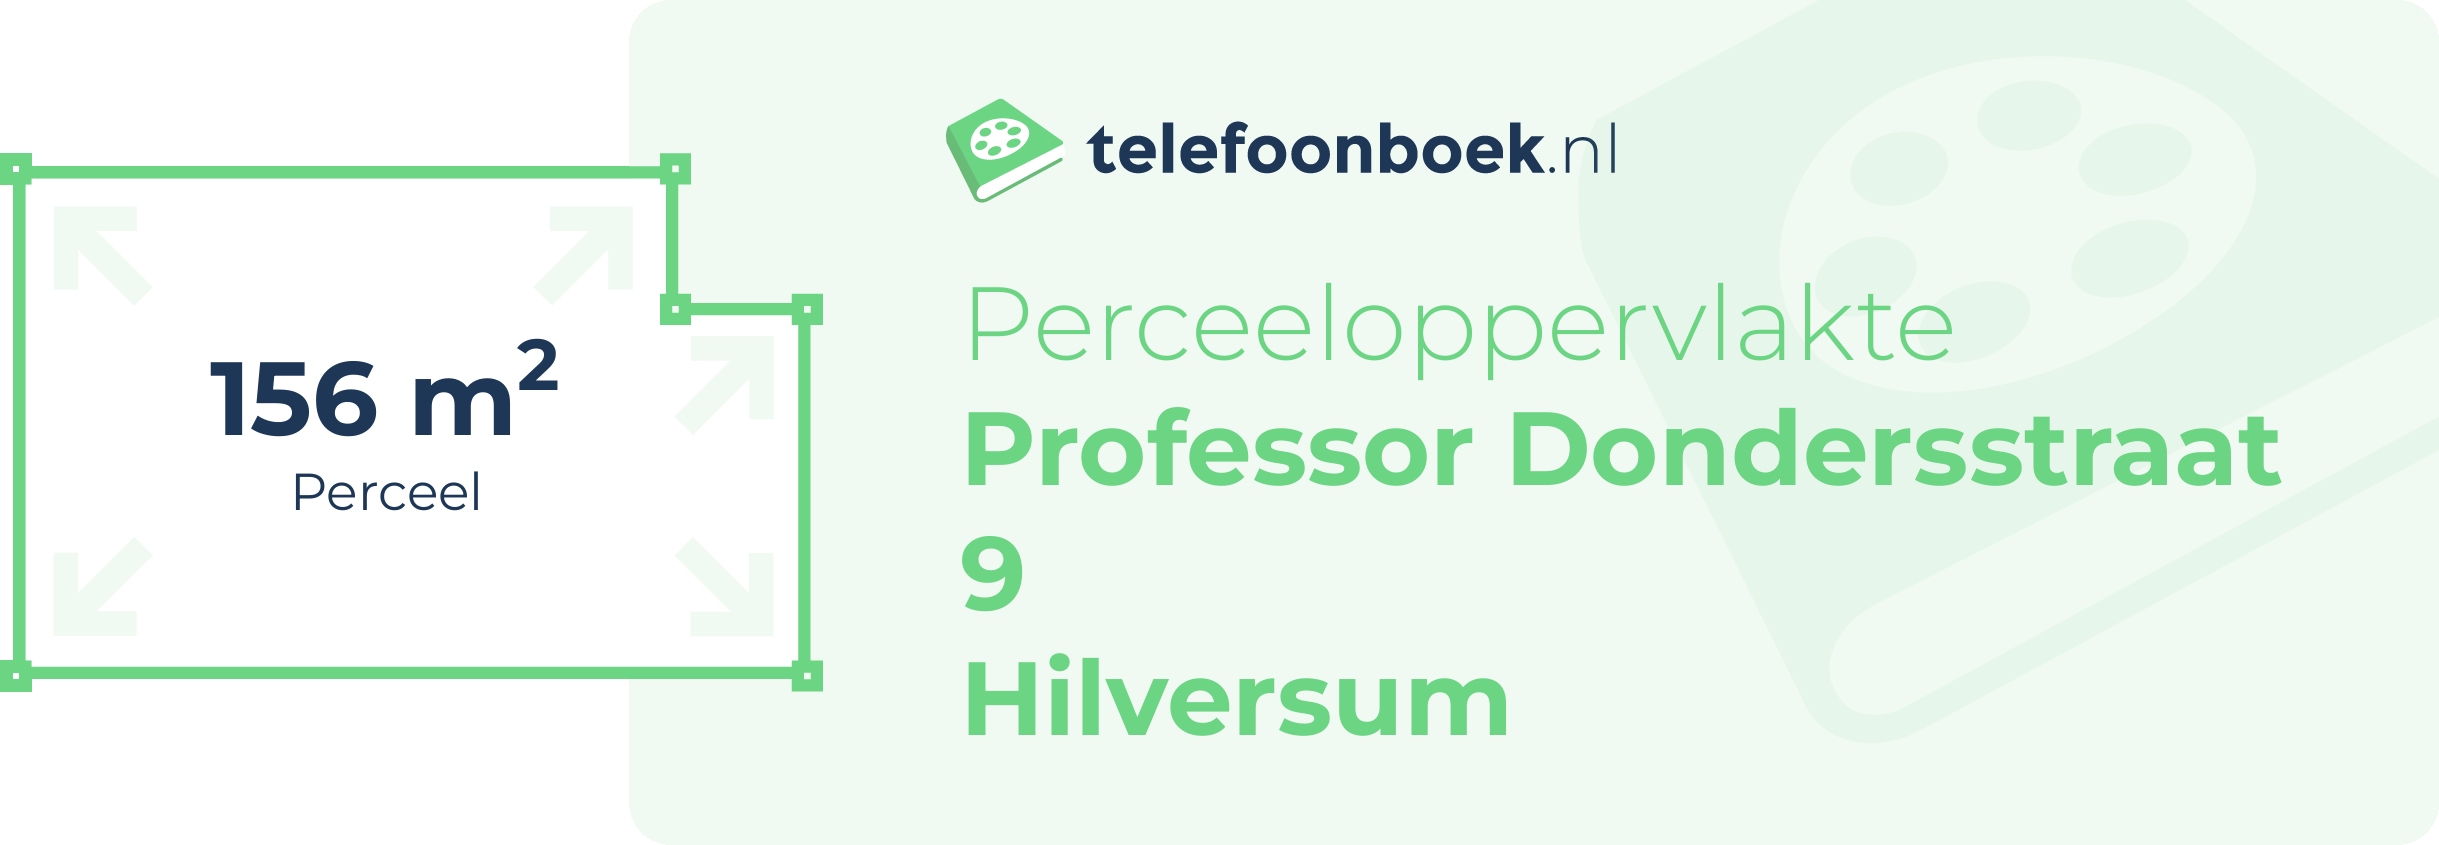 Perceeloppervlakte Professor Dondersstraat 9 Hilversum